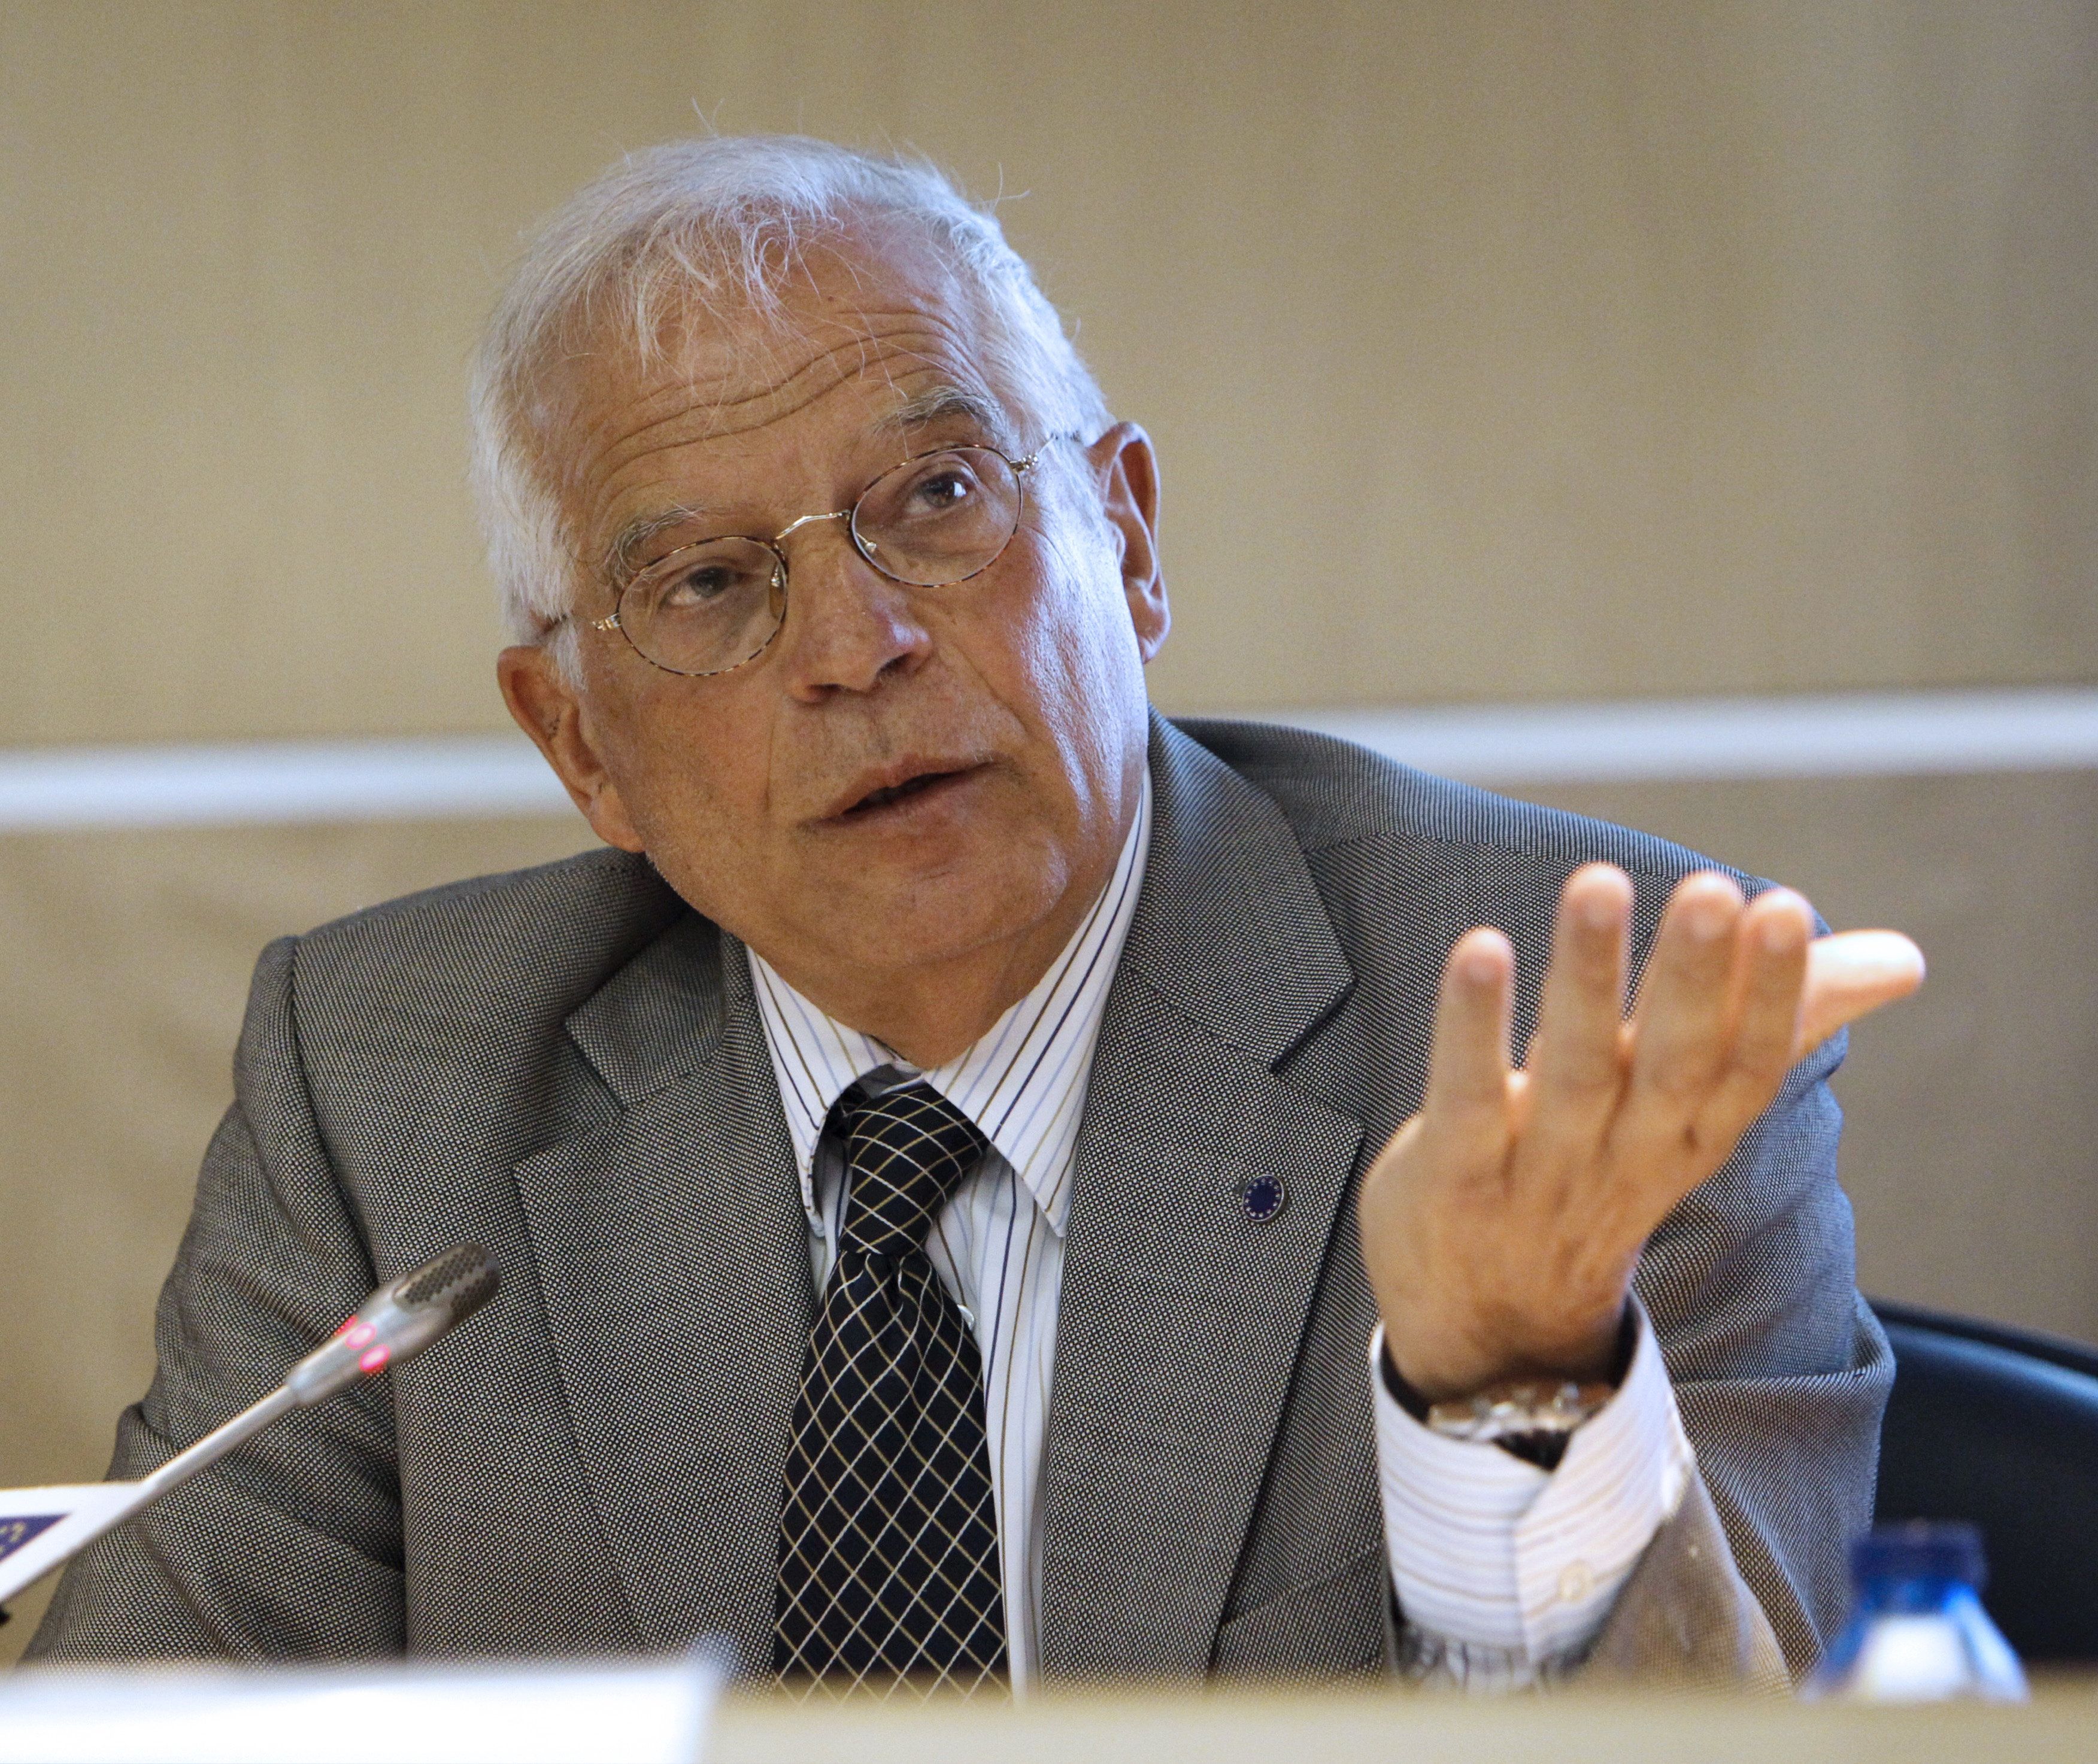 El exministro Borrell denuncia haber sufrido una estafa de 150.000€